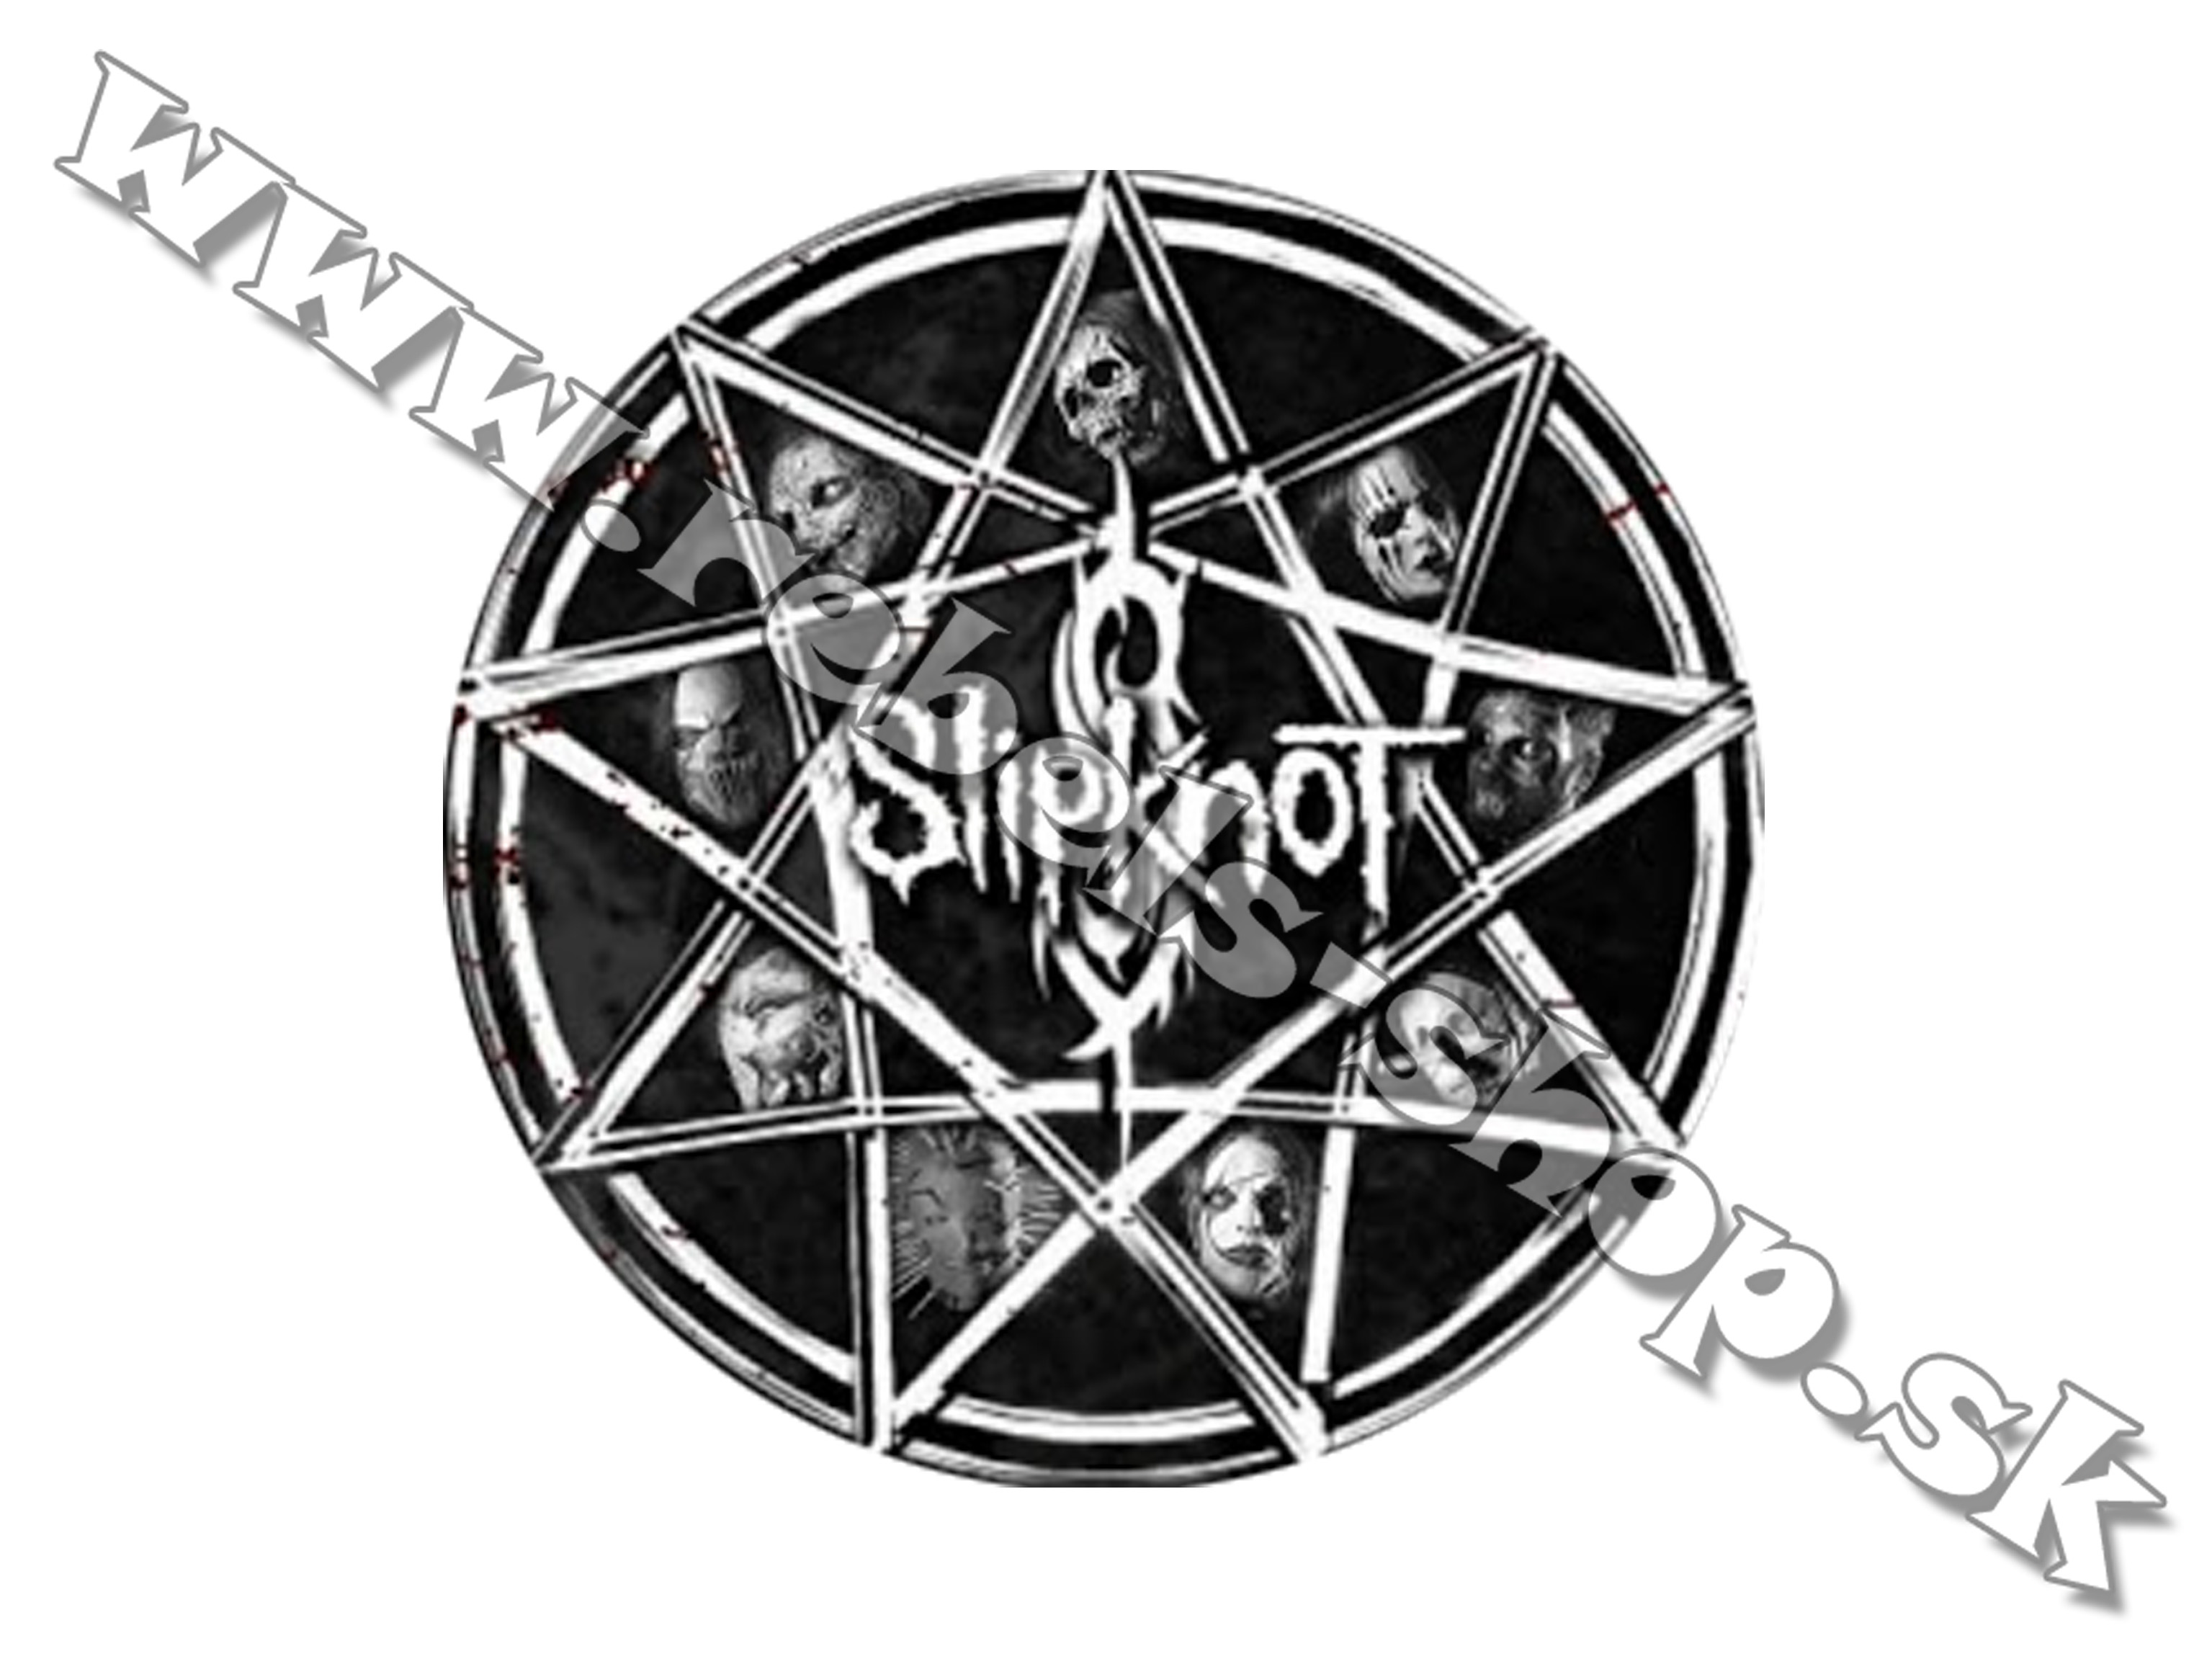 Odznak "Slipknot"